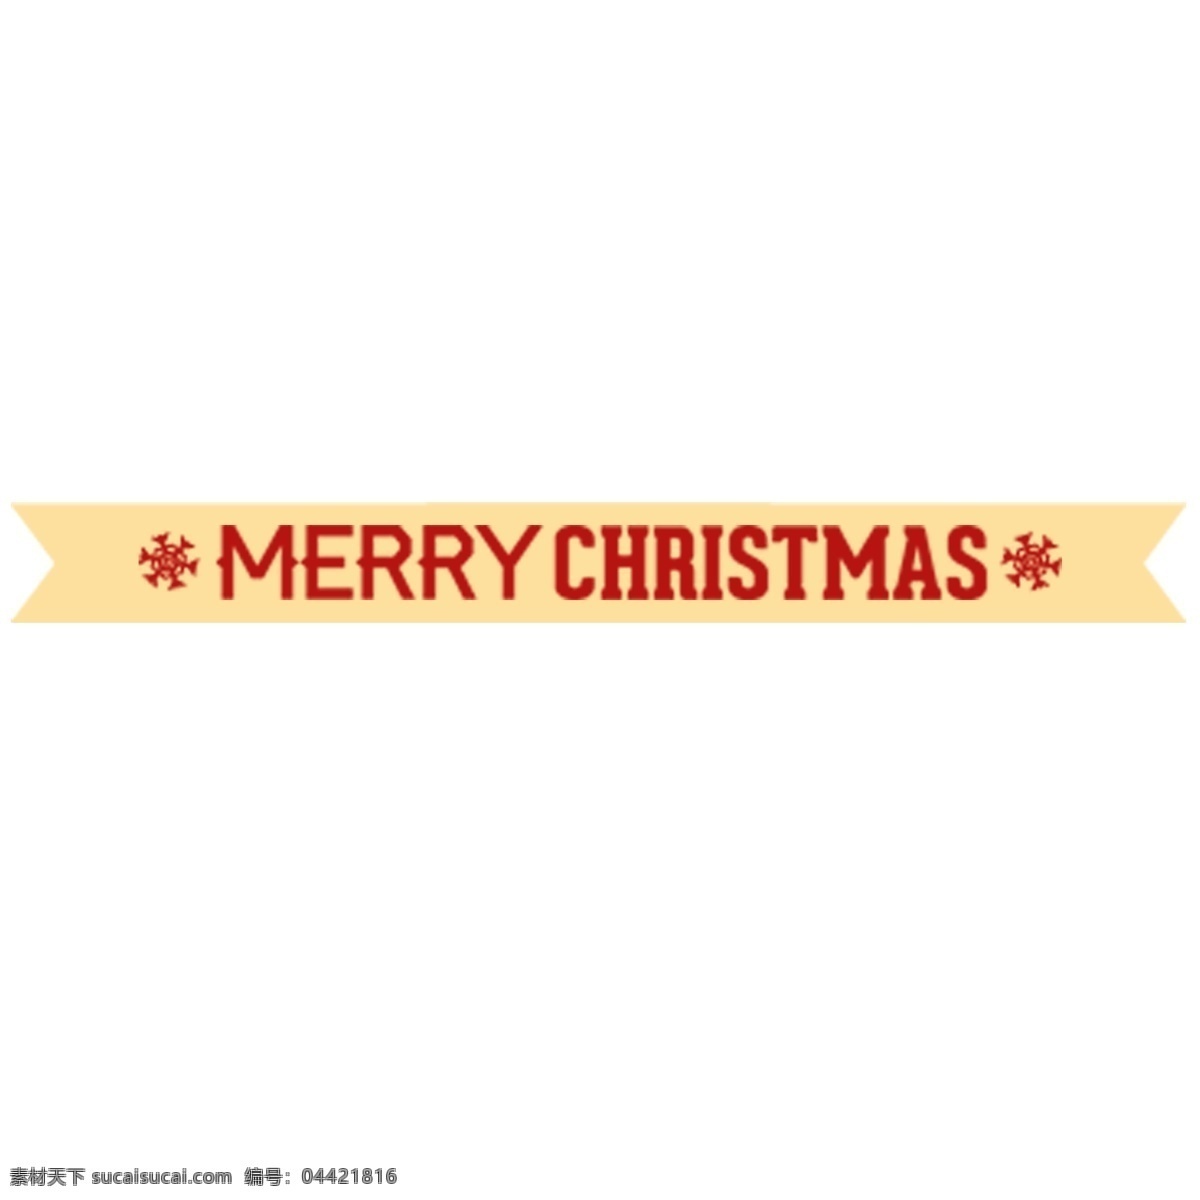 圣诞节 英文 标签 雪花 丝带标签 设计素材